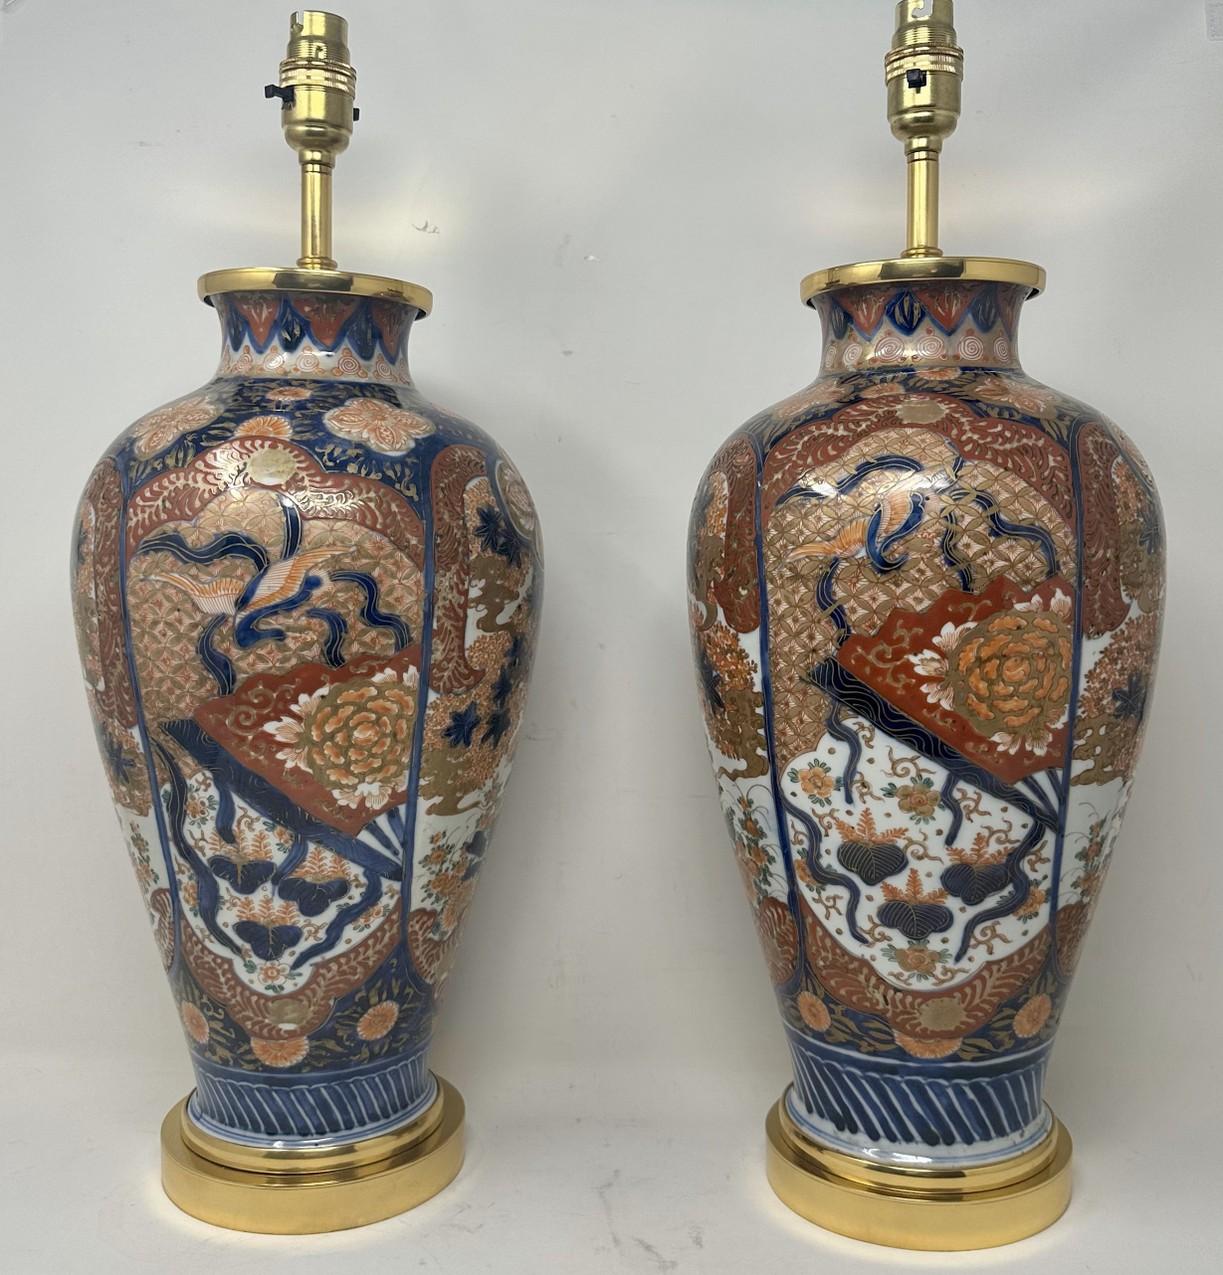 Superbe paire de vases traditionnels japonais Imari en porcelaine de forme bulbeuse, de forme balustre inversée avec des cols évasés et d'assez grandes proportions, maintenant convertis en une paire de lampes de table électriques, complètes avec des